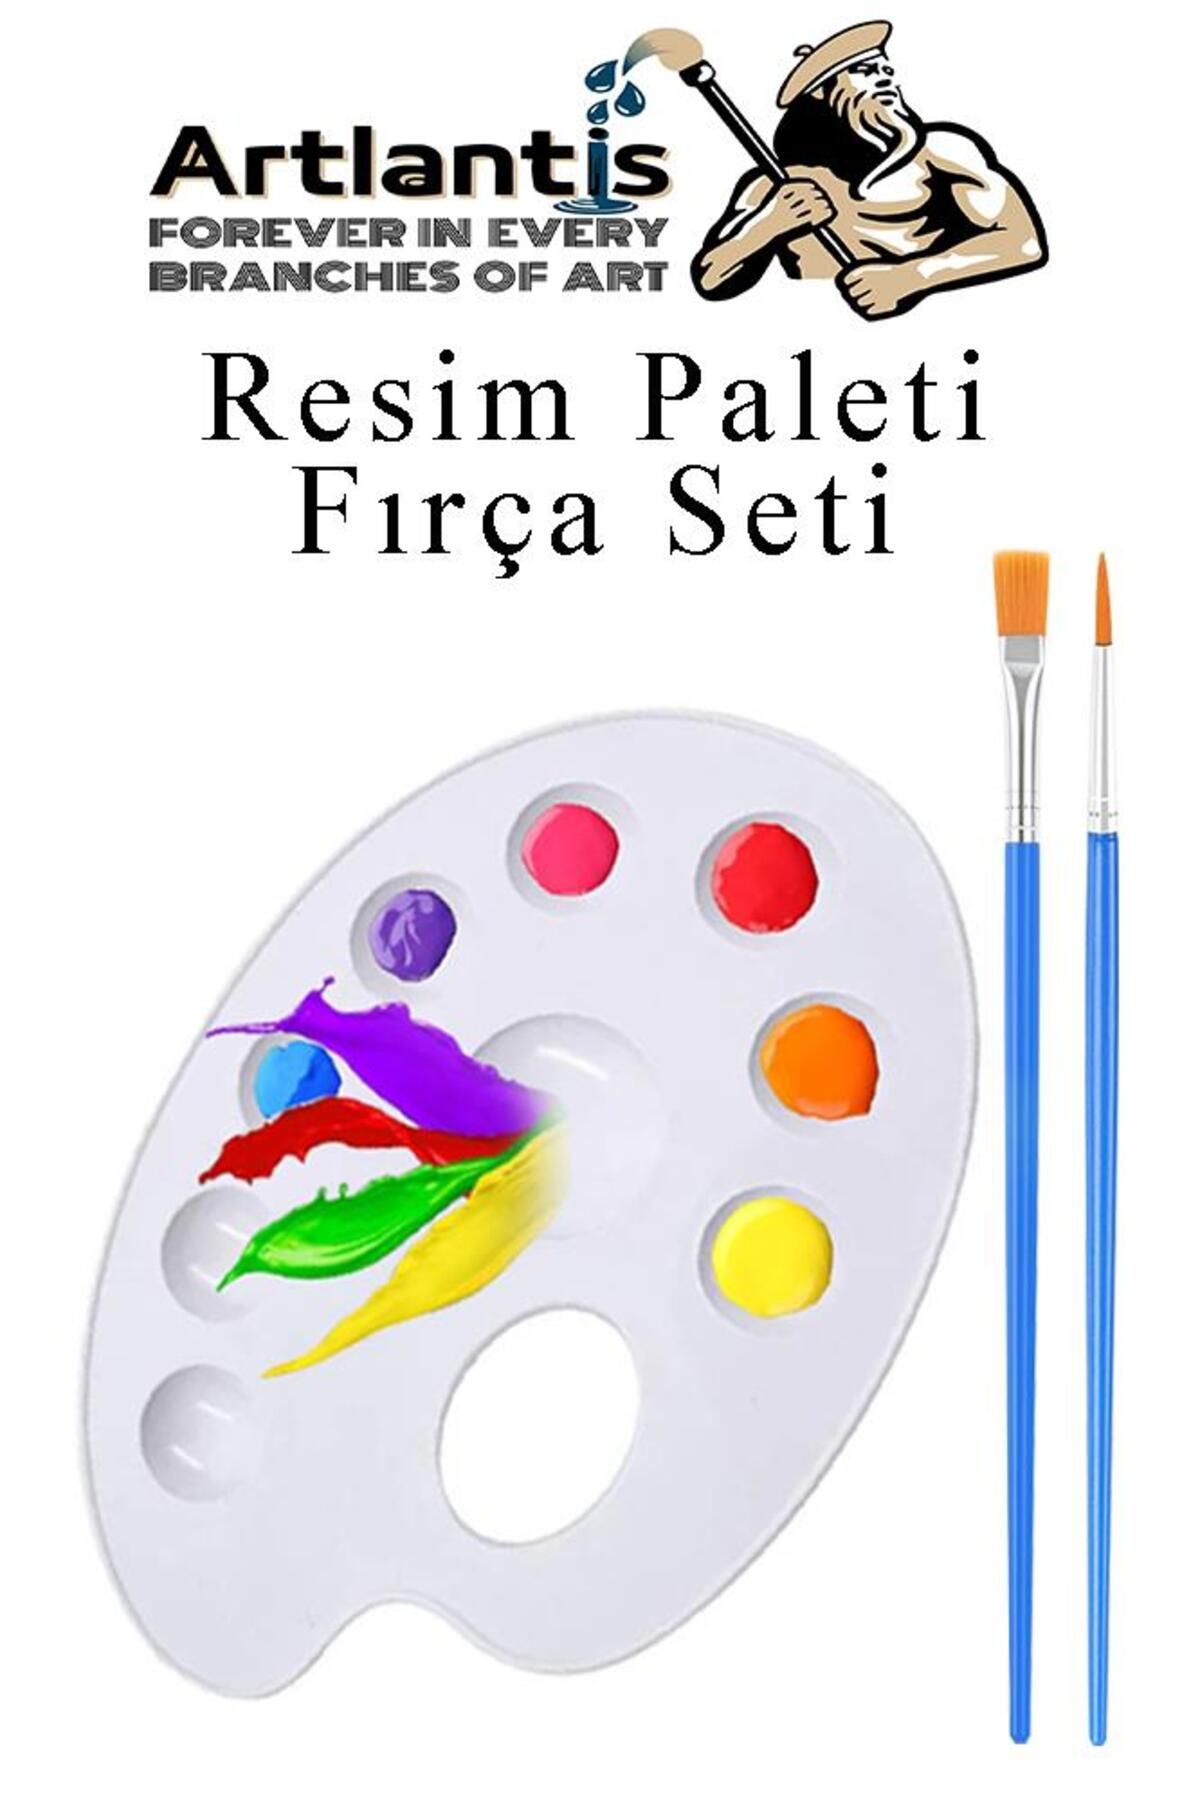 Artlantis Resim Paleti ve Resim Fırça Seti 1 Paket Ressam Paleti Boyama Fırçası Akrilik Boya Guaj Boya Suluboy